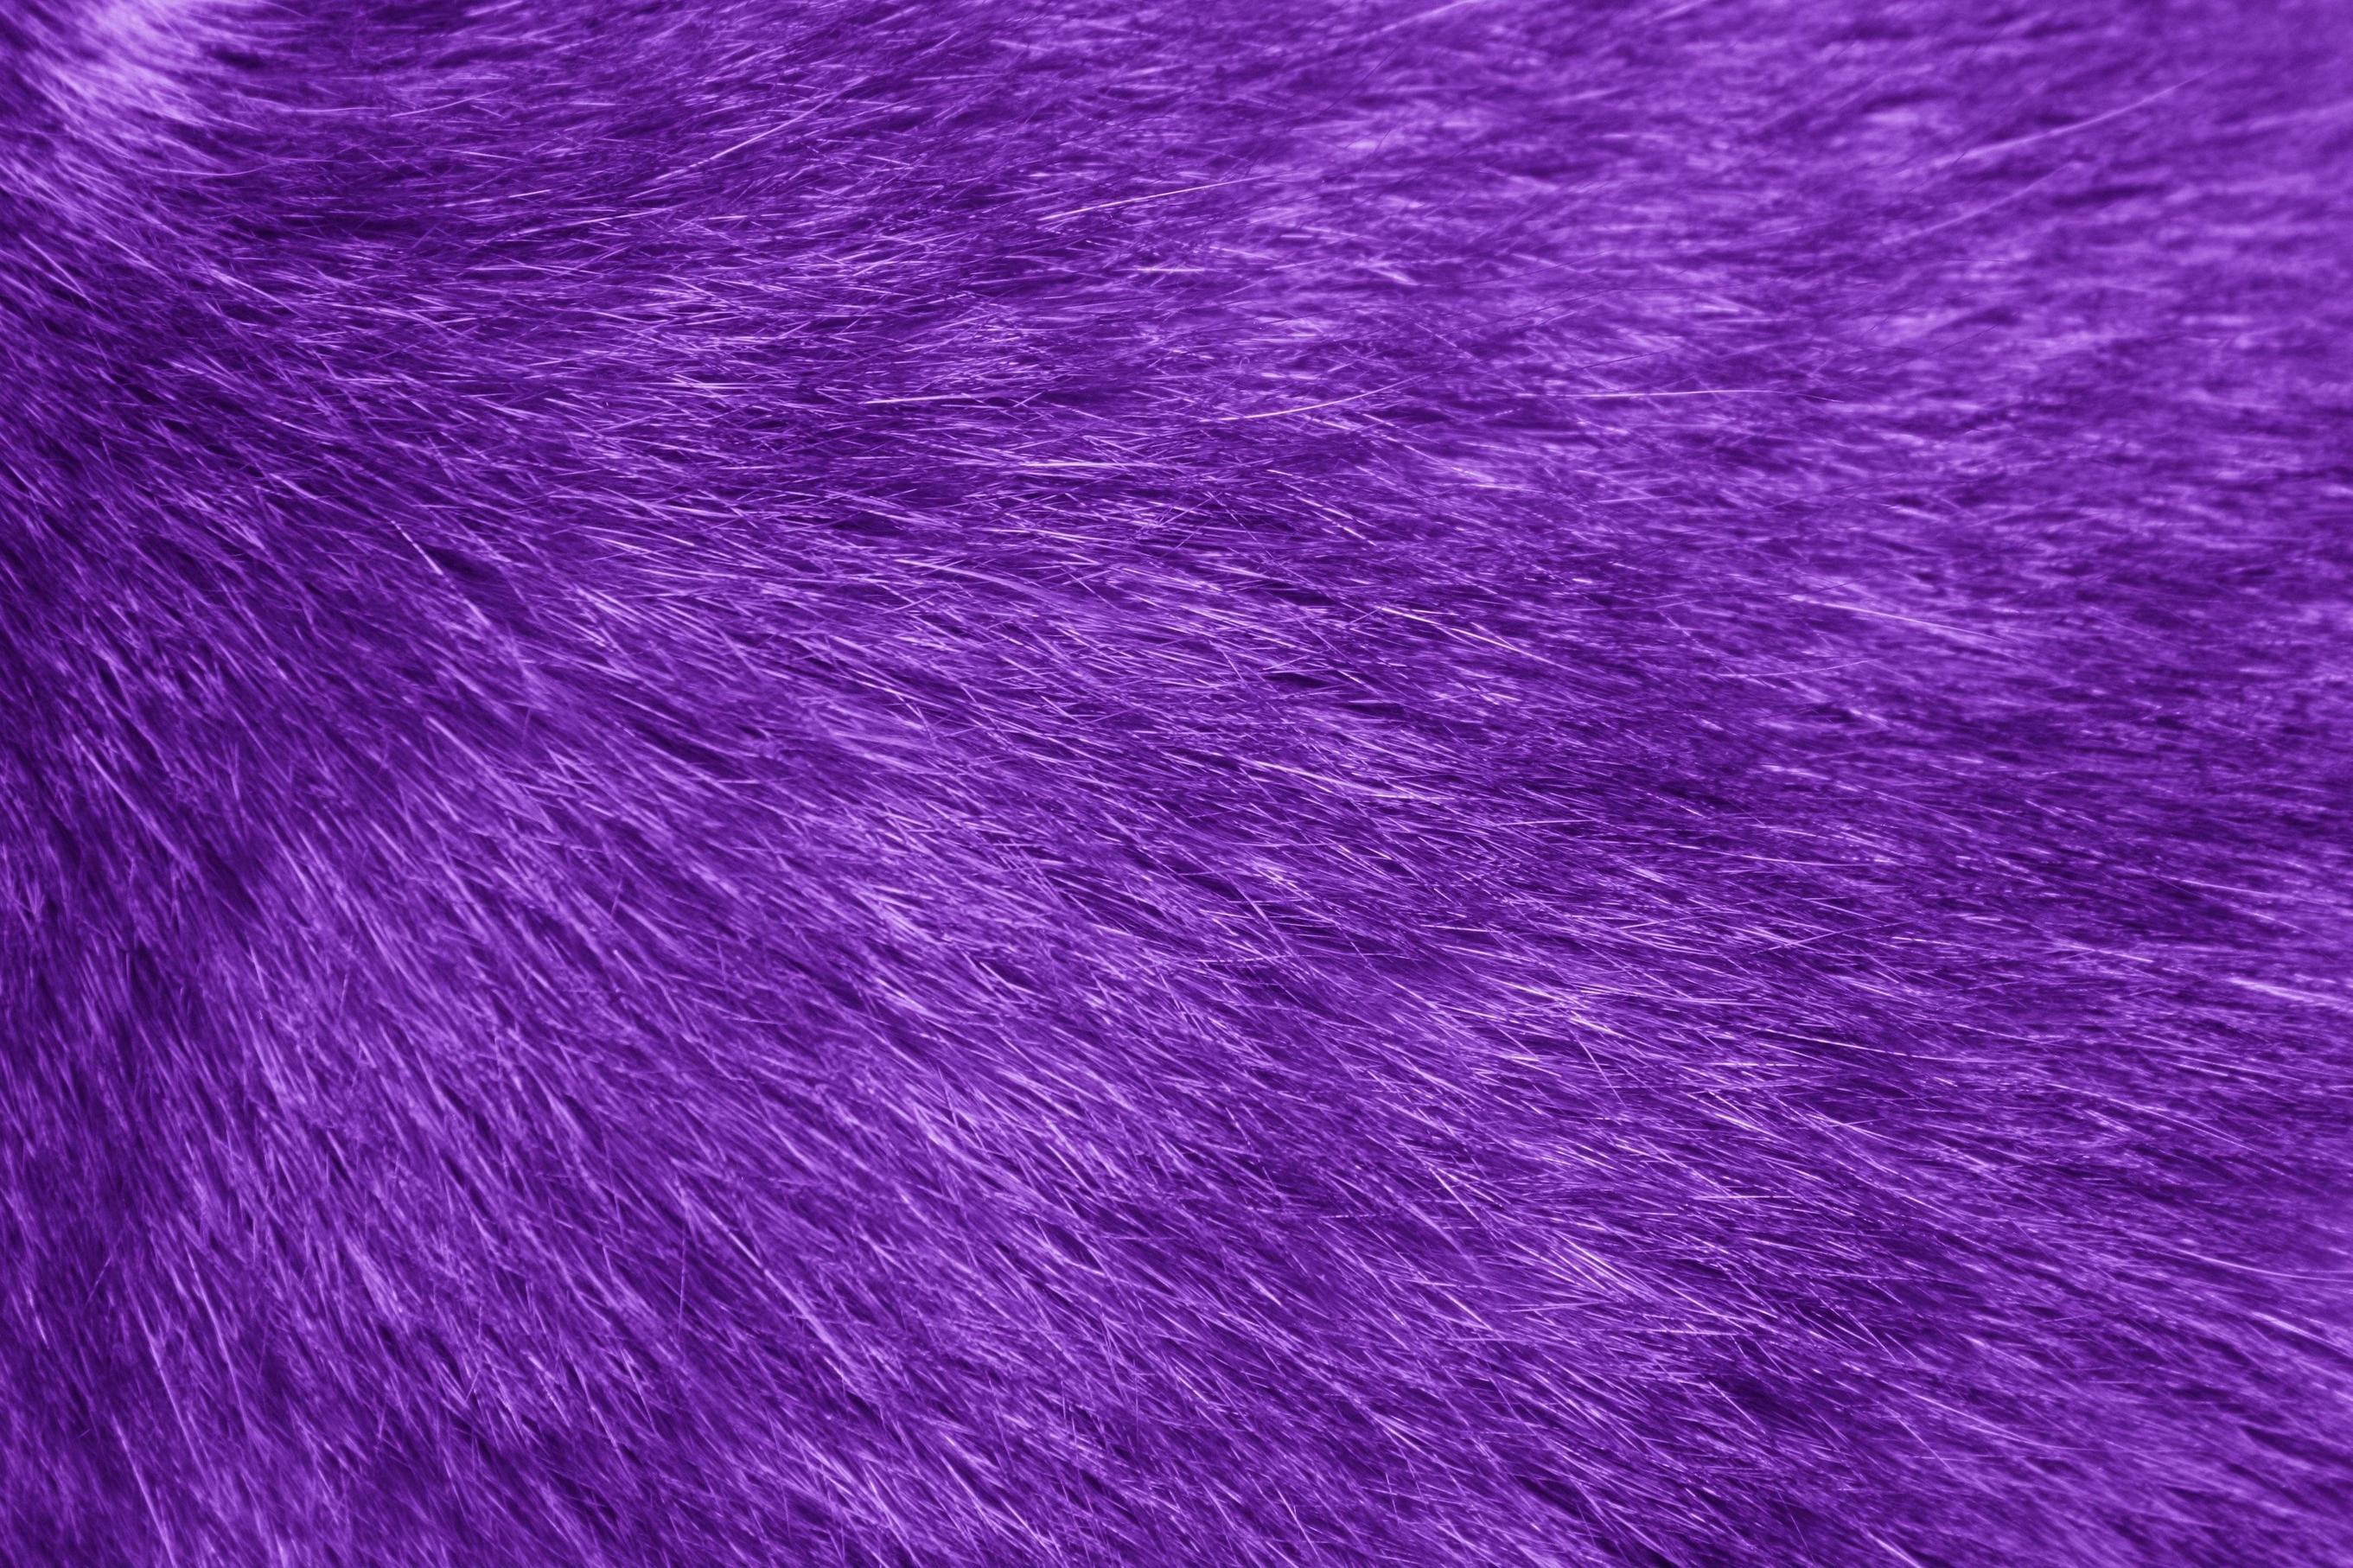 2722x1814 Fur Texture Purple Picture | Free Photograph | Photos Public Domain